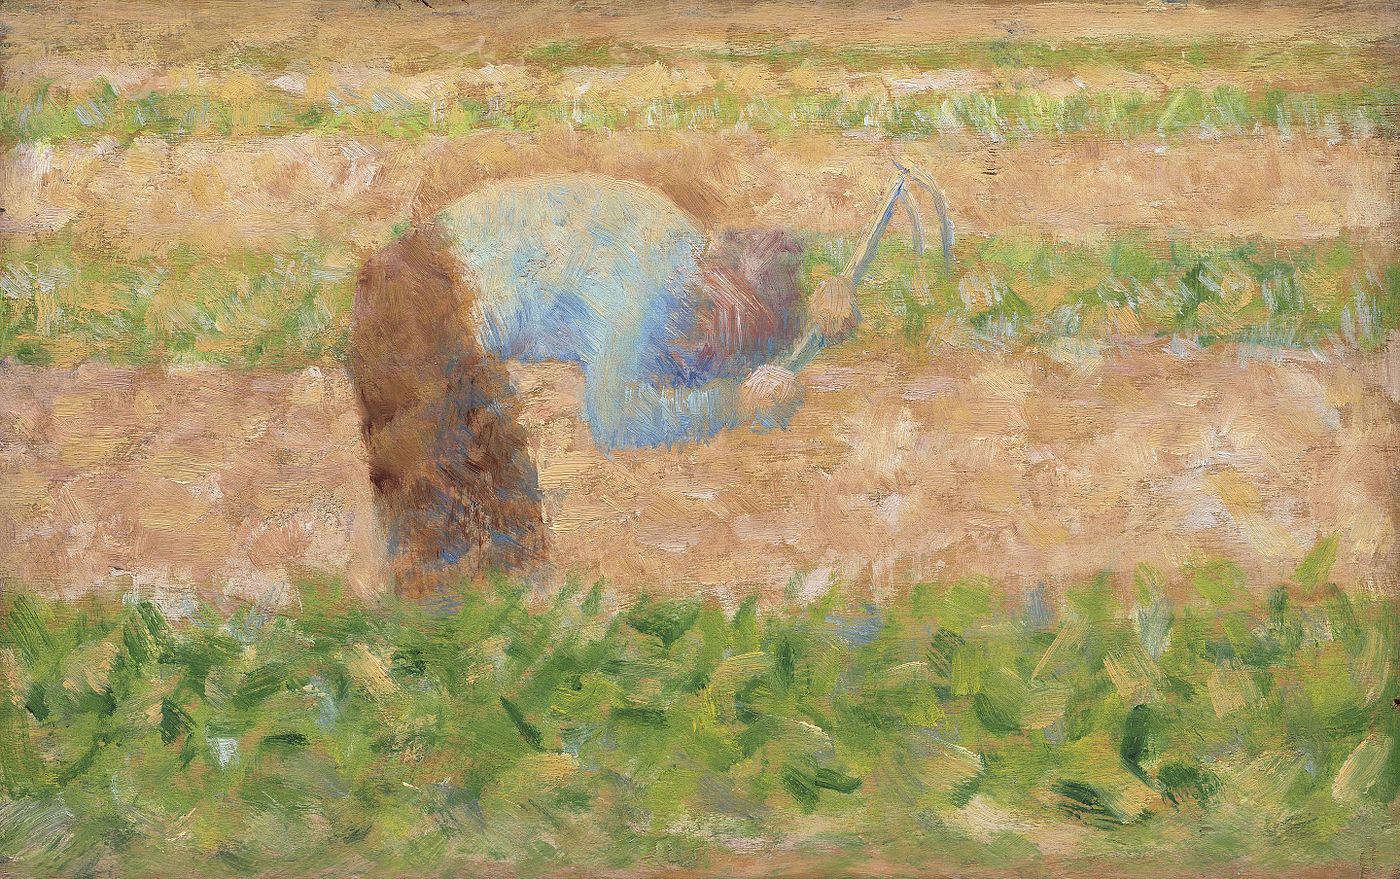 Georges+Seurat-1859-1891 (46).jpg